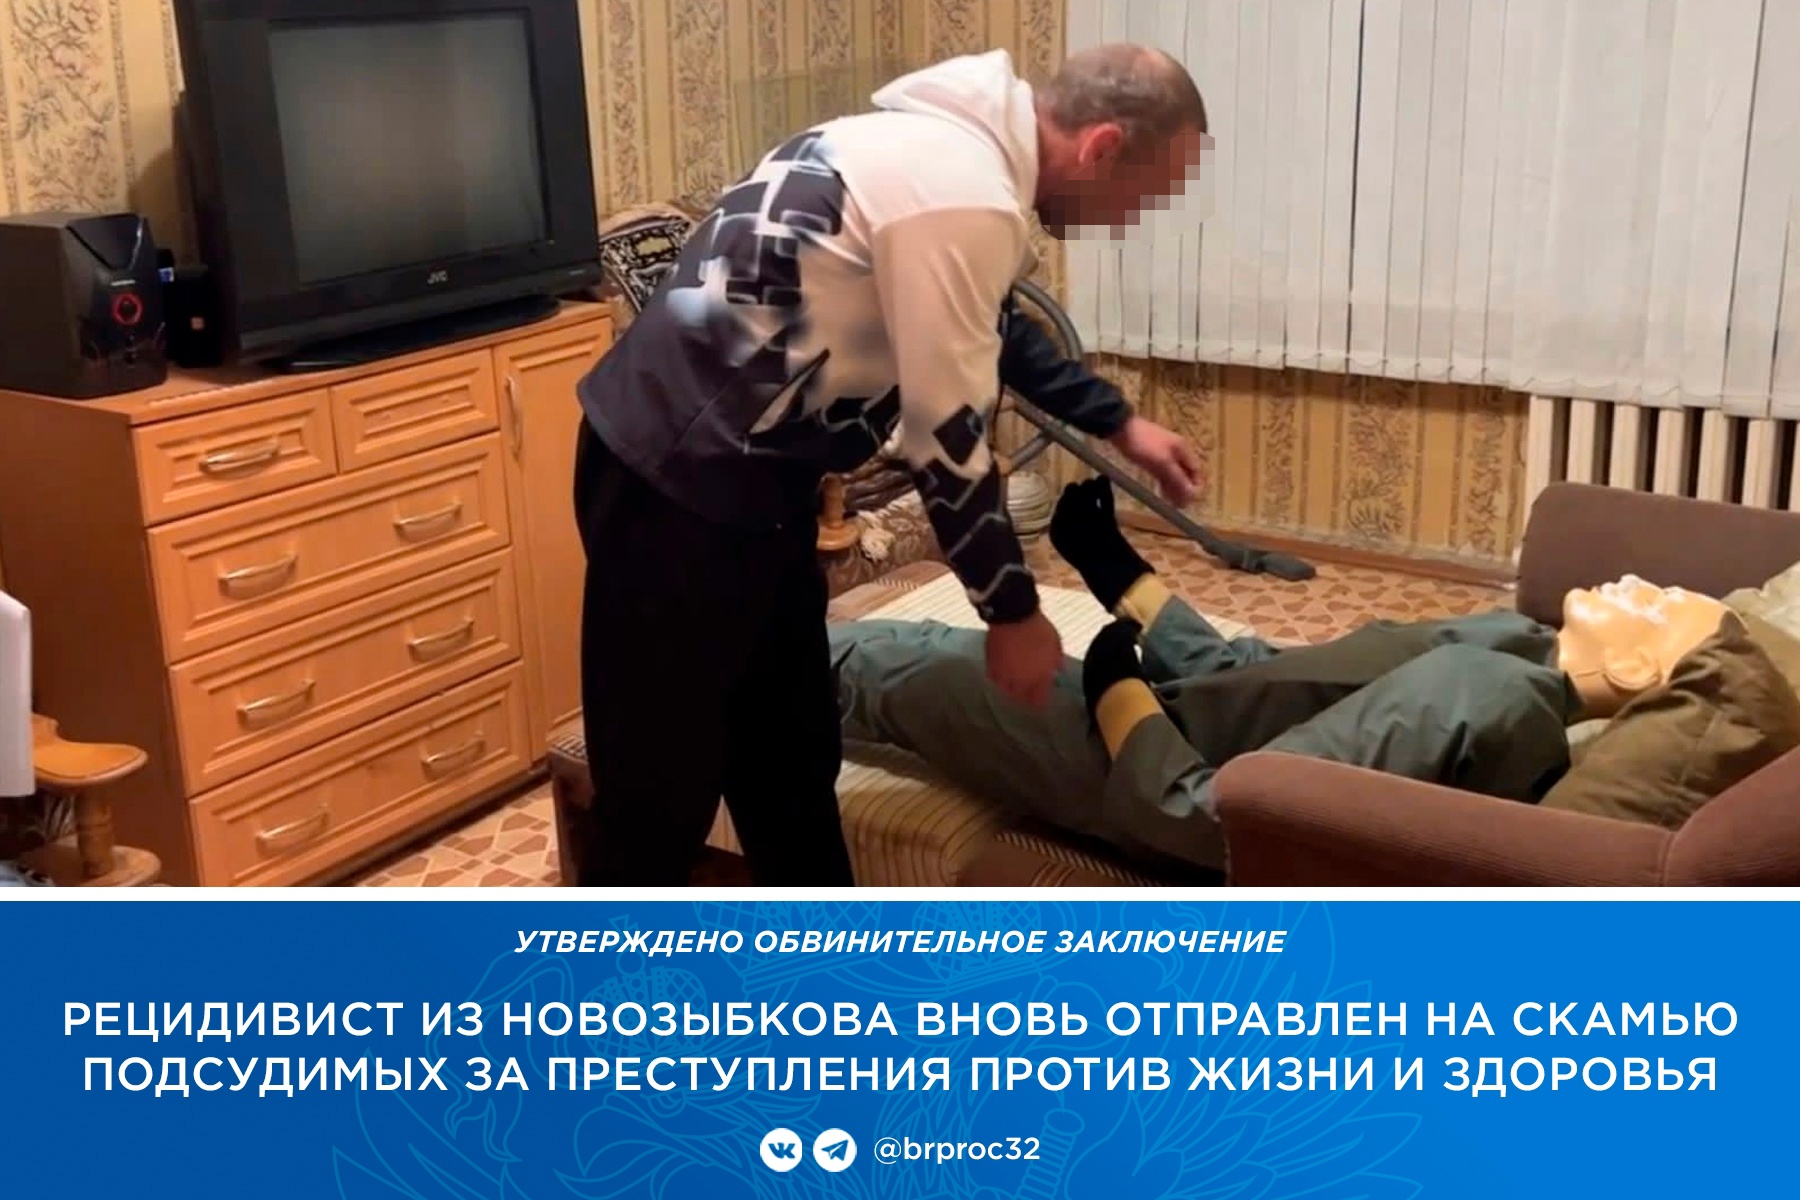 В Новозыбкове уголовник до смерти забил знакомую рукояткой от швабры